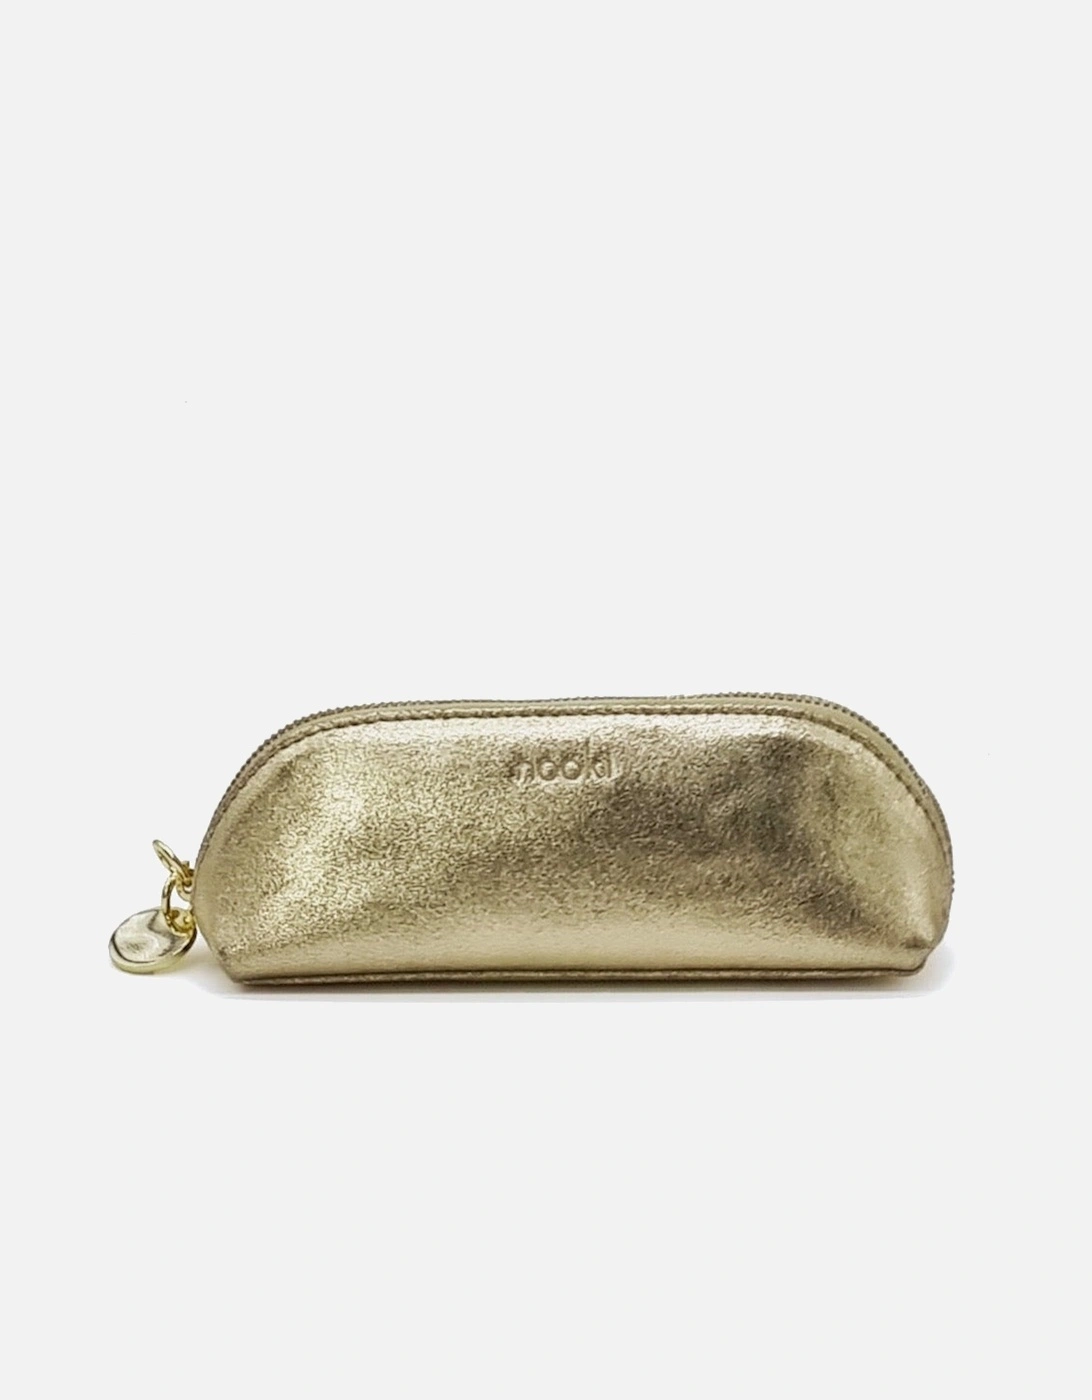 Poppy Make-up Bag - Metallic Gold